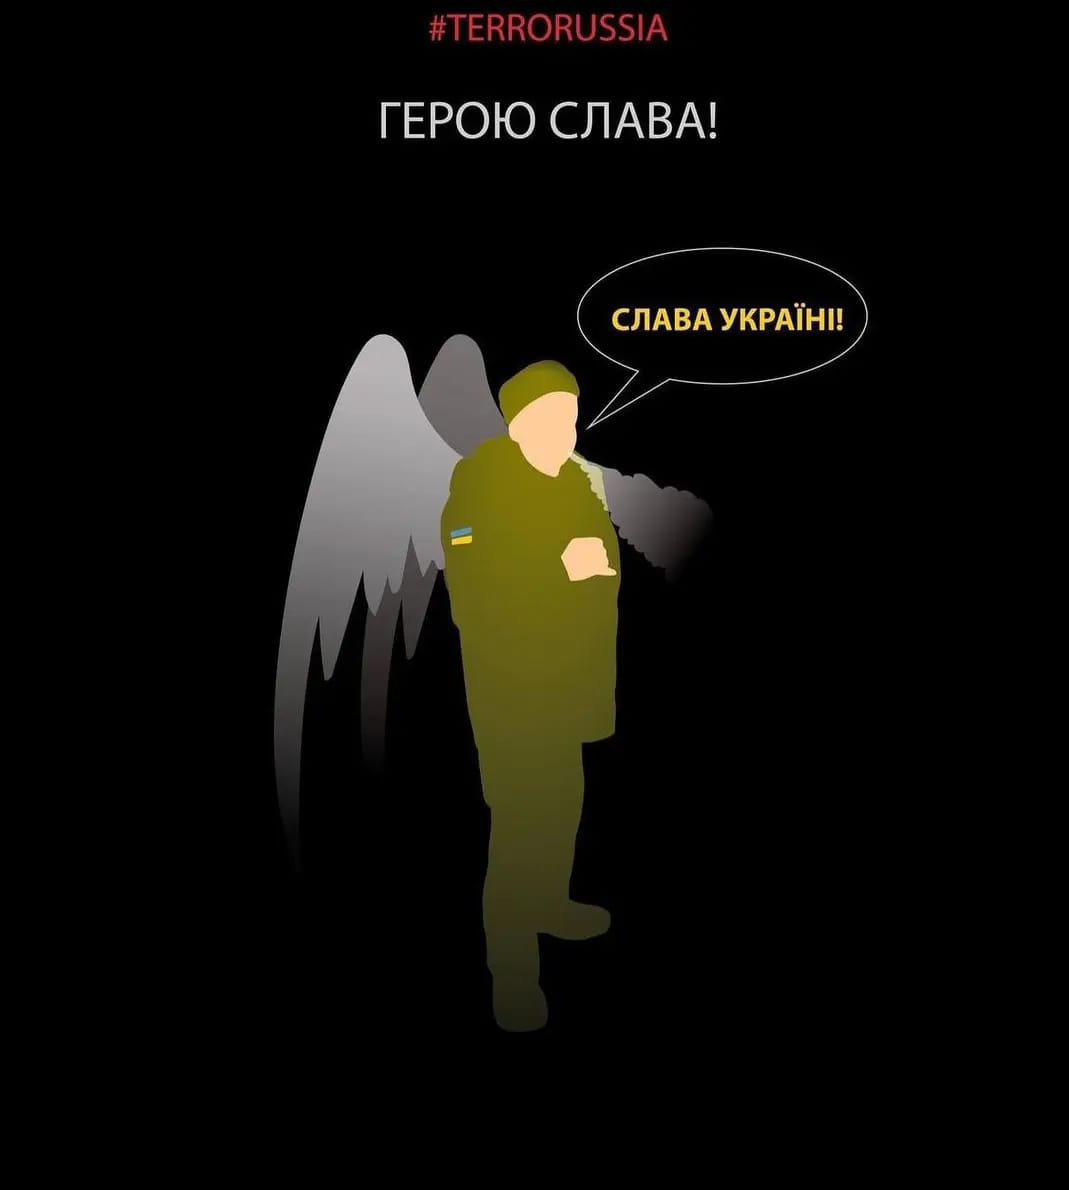 Герою слава! На честь українського безстрашного мученика-воїна запустили масштабний флешмоб